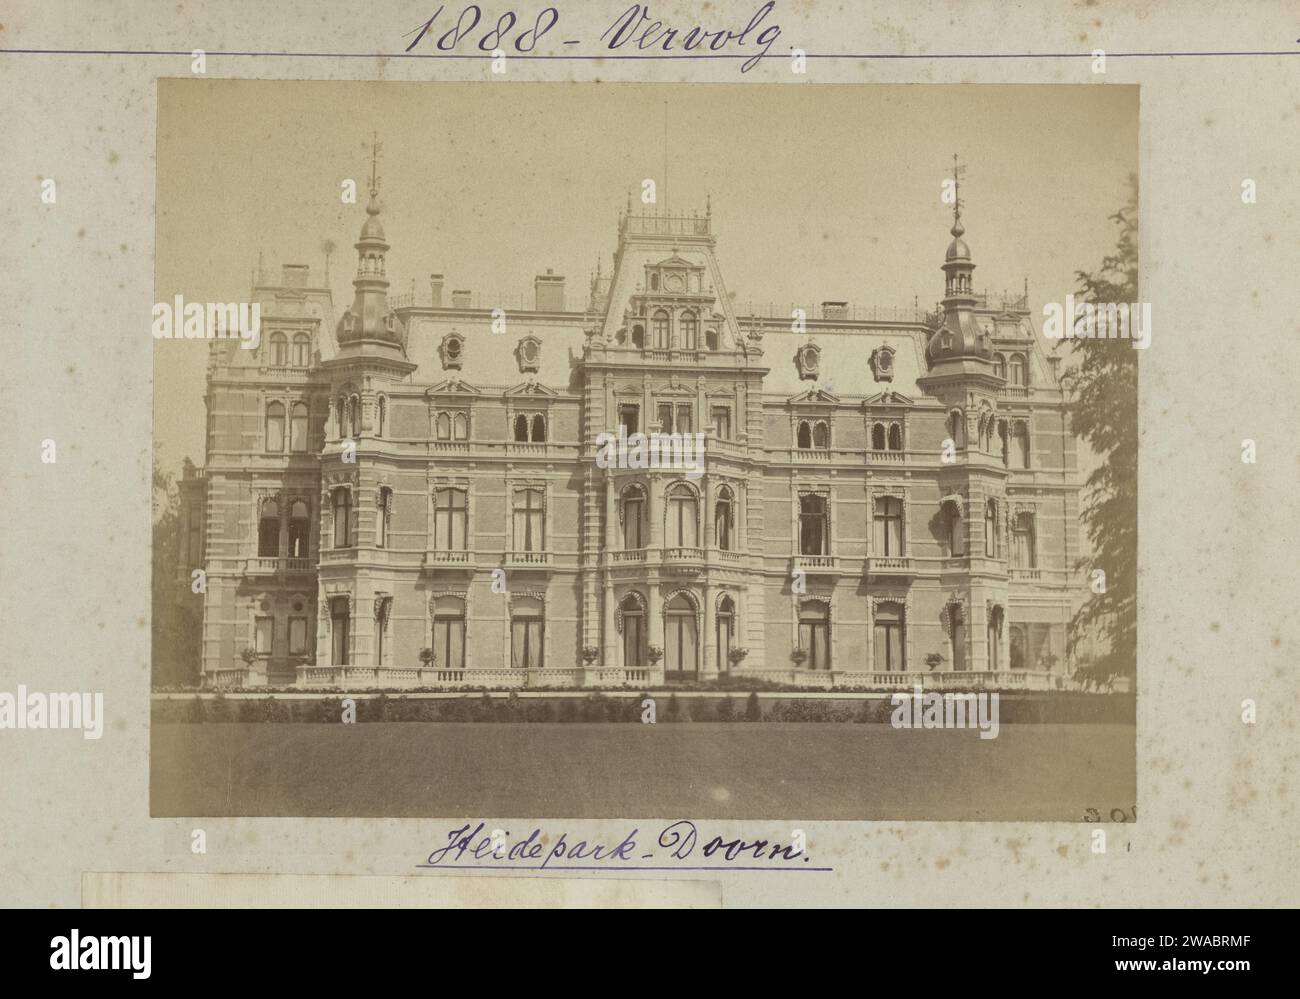 Vue de Landhuis Hydepark, Doorn, 1888 - 1889 photographie papier néerlandais. tirage photographique à l'albumine sur support Banque D'Images